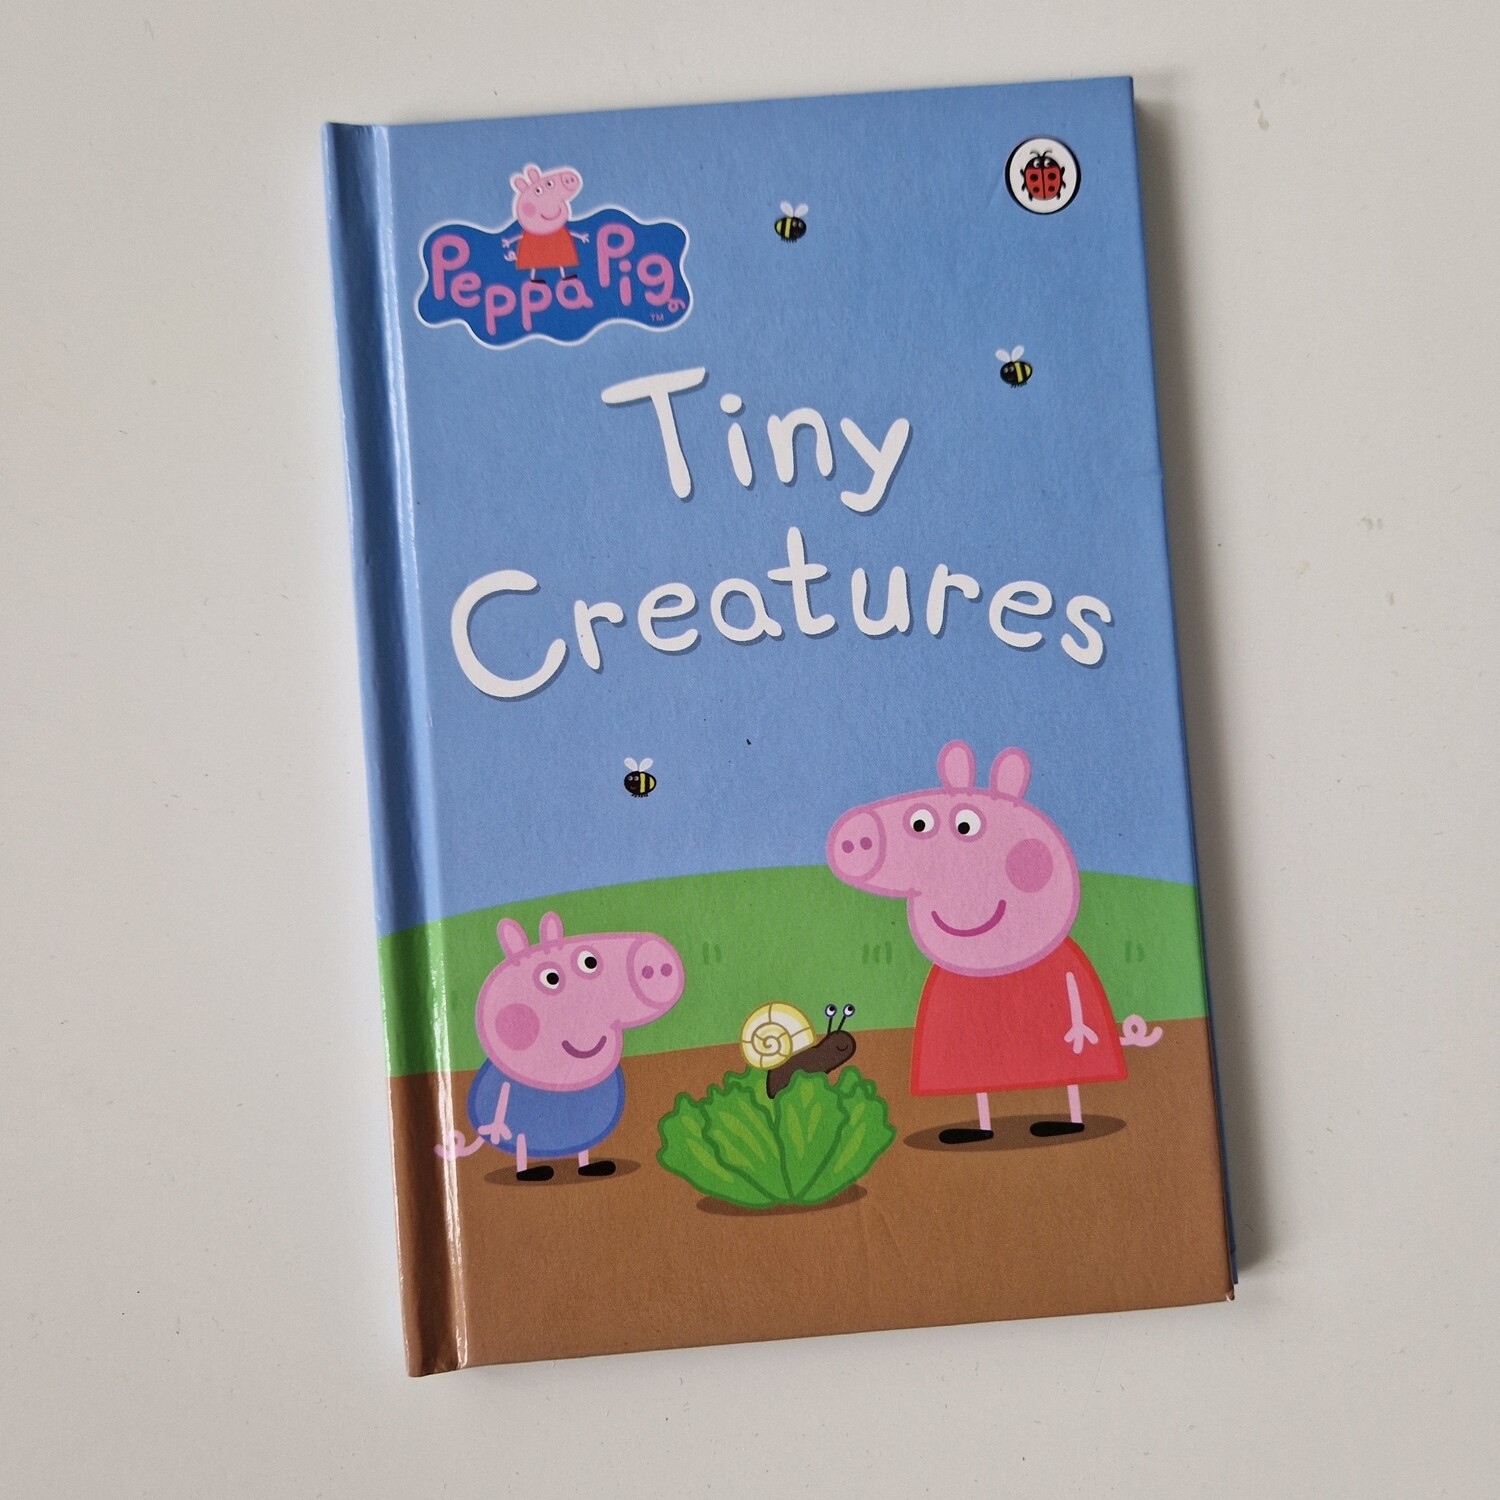 Peppa Pig - Tiny Creatures Notebook - Ladybird book